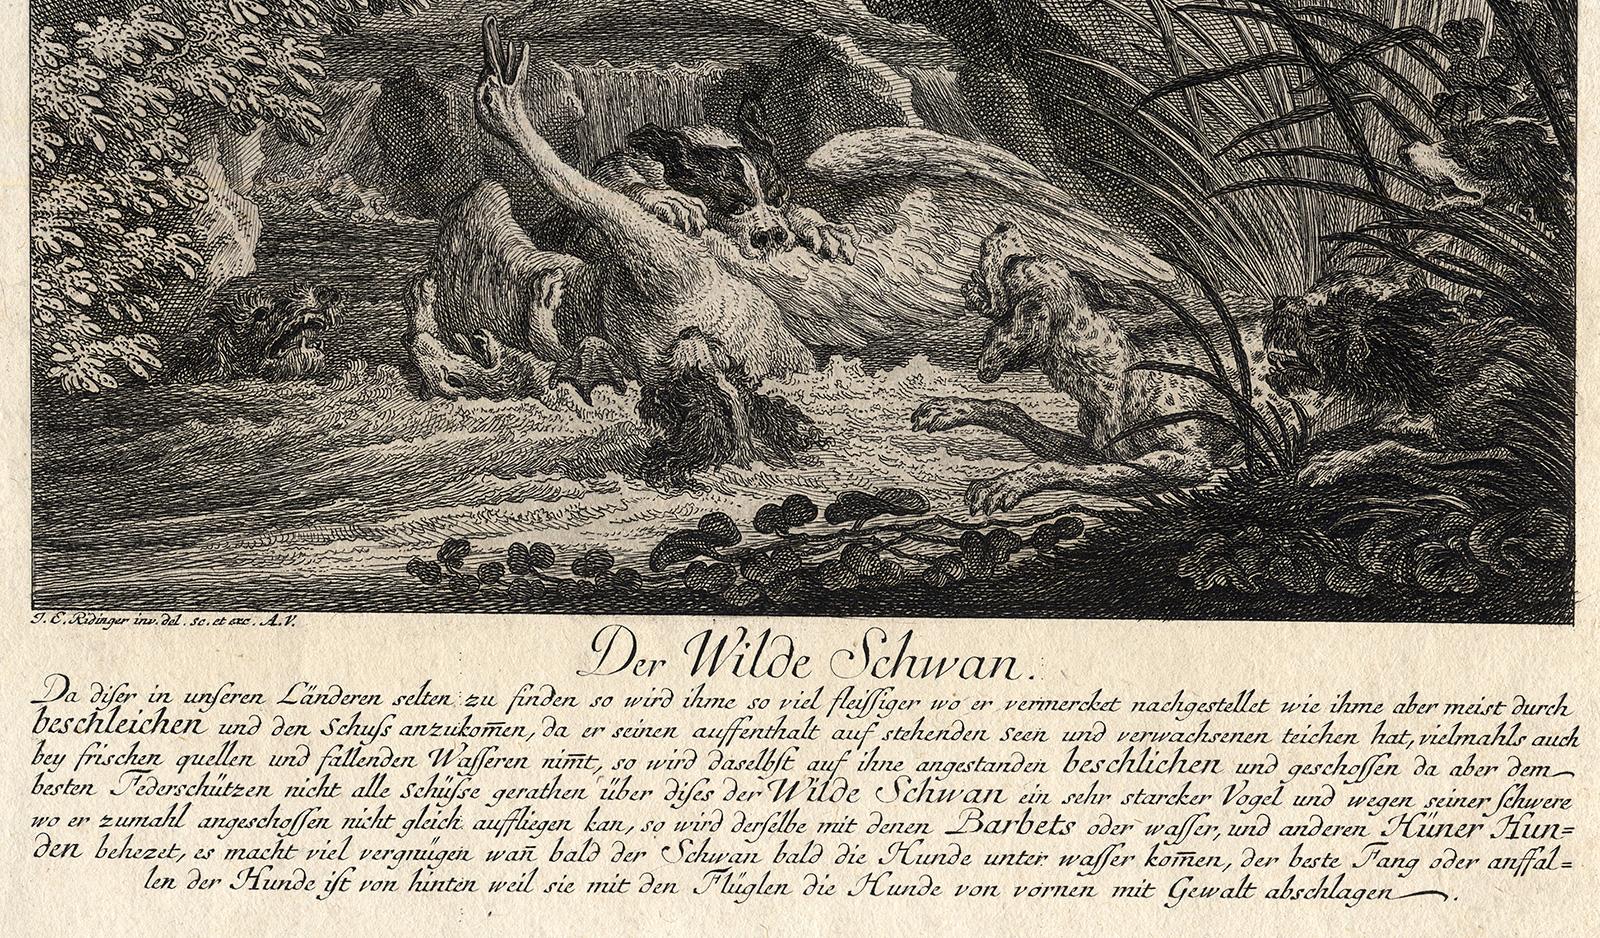 Subject: Antique print, titled: 'Der Wilde Schwan.' - (The wild swann.) Several dogs have surrounded and attack a swan in the water.

Description:  From: 'Virtute et Ingenio. Genaue und richtige Vorstellung der wundersamste Hirsche sowohl als